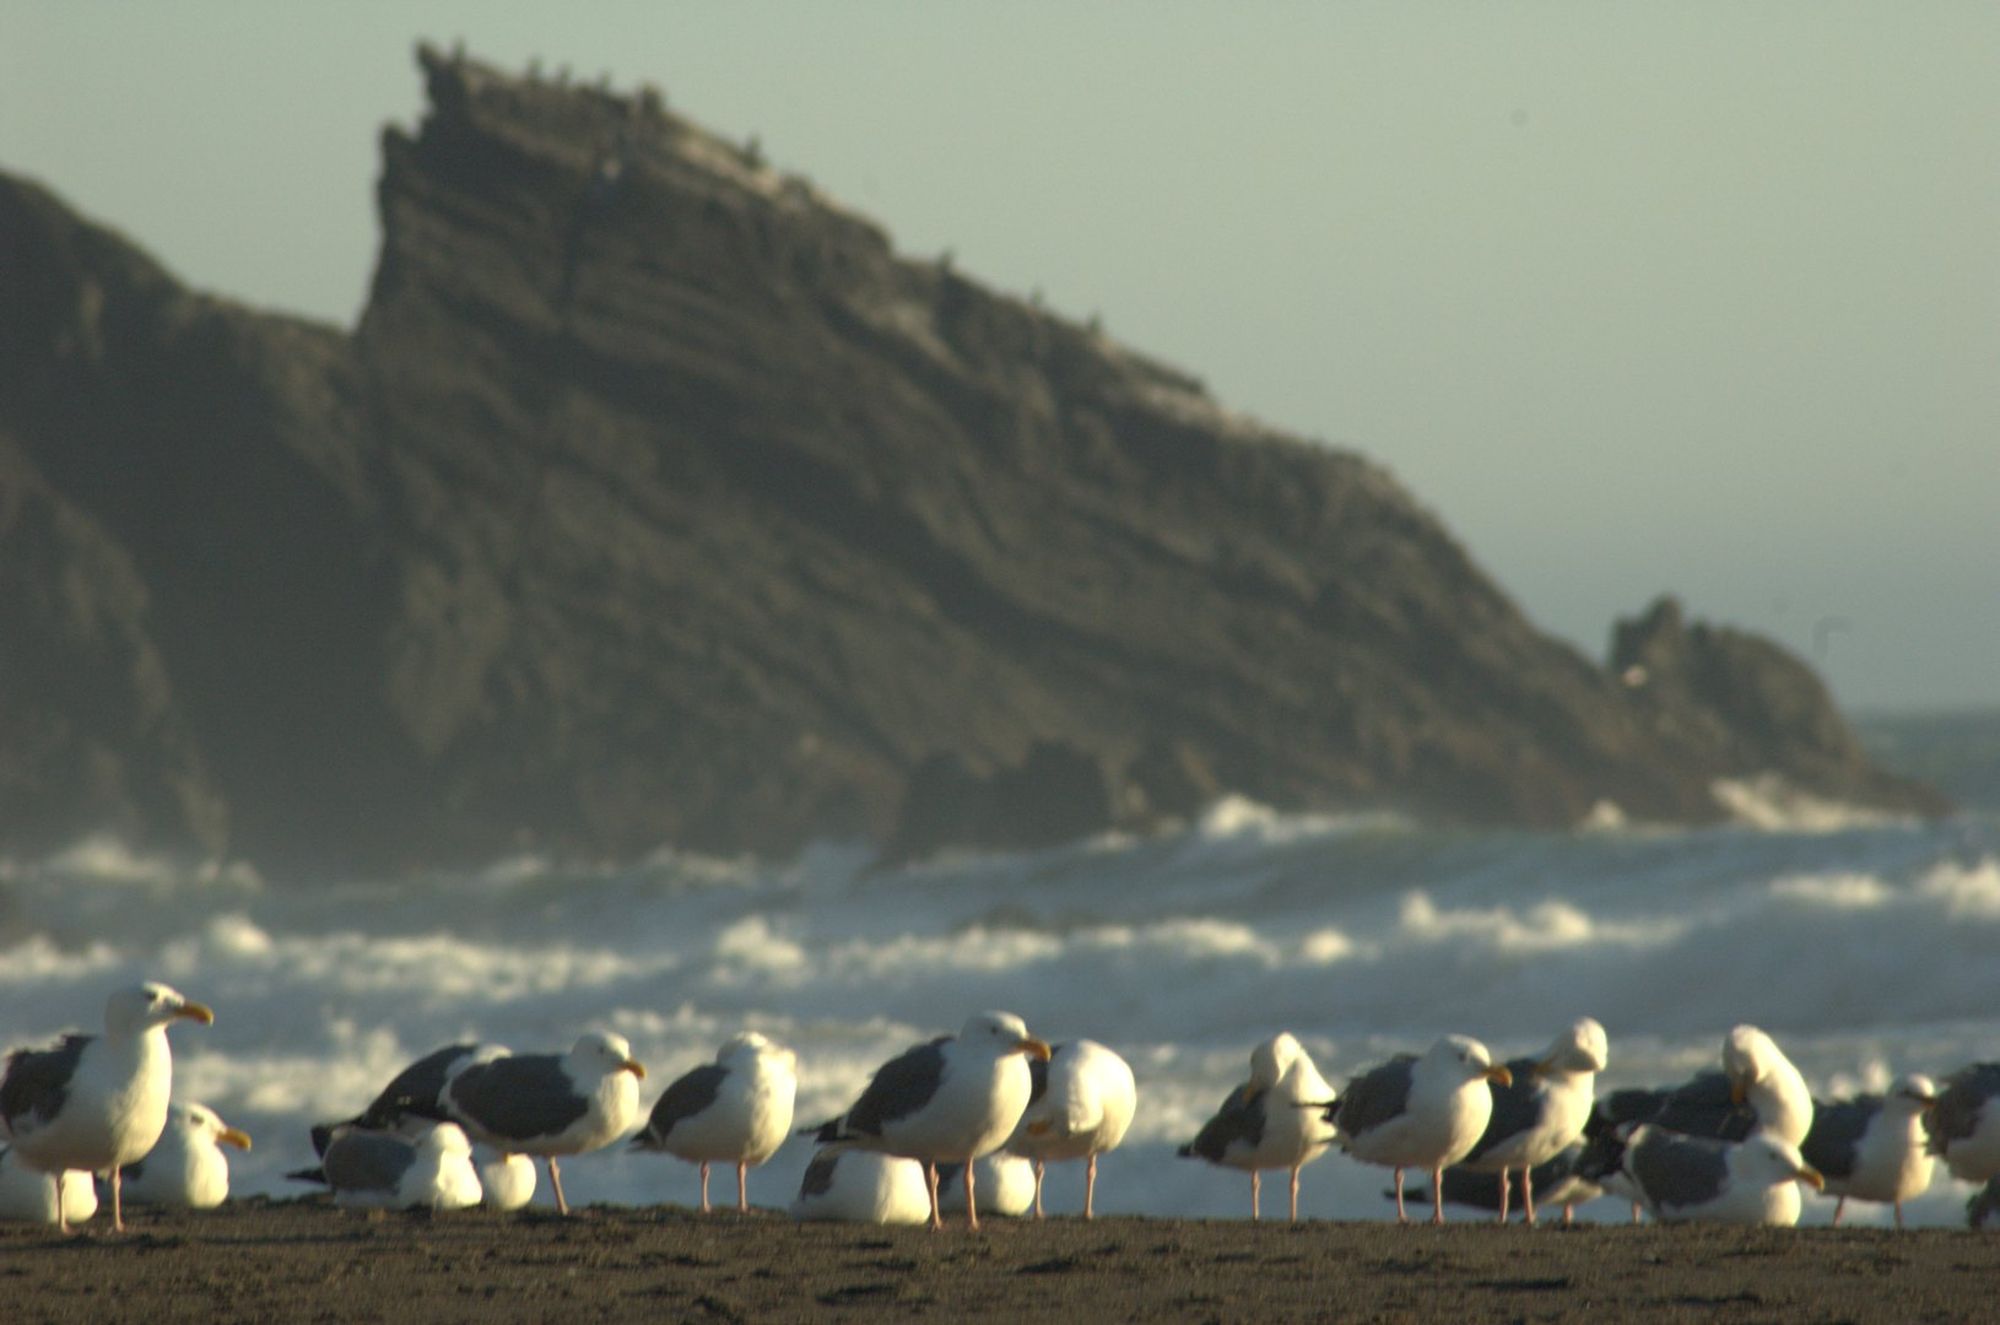 Humbug Seagulls with Rocks.